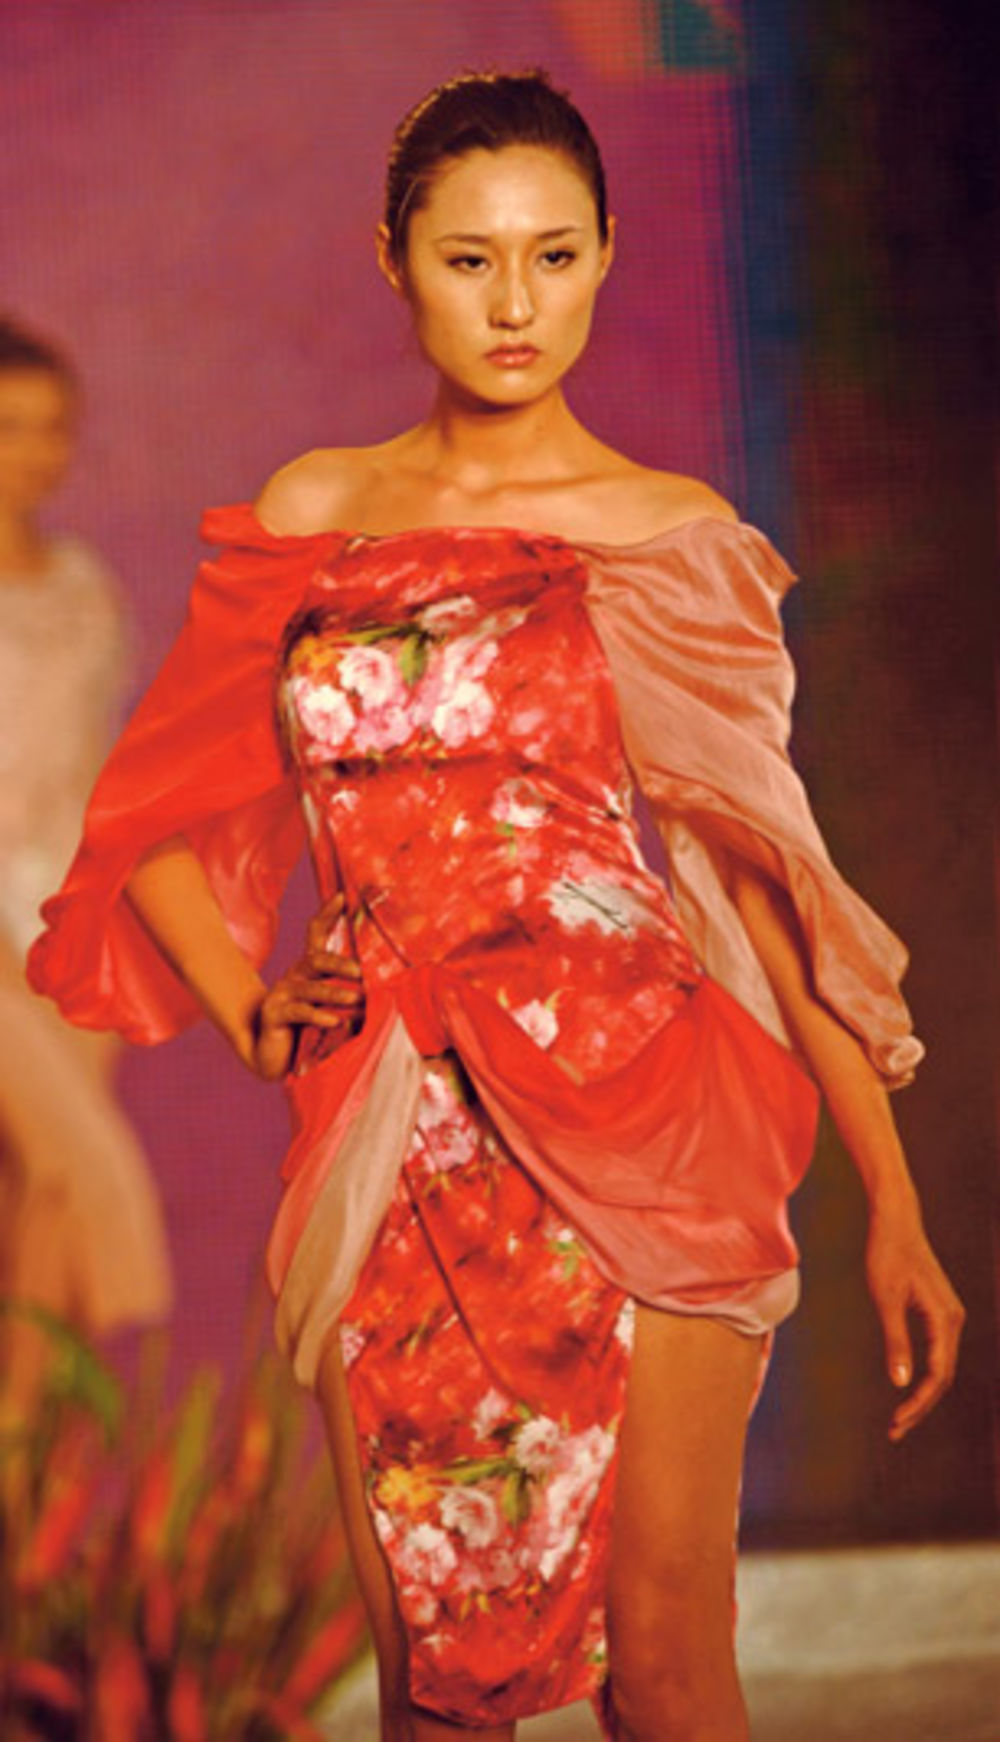 Vedre i vesele boje obeležile su poslednju Nedelju mode u 2011. u Vijetnamu, a na njoj je određen i trend za buduće tople dane - šareni deseni i asesoari od cveća.